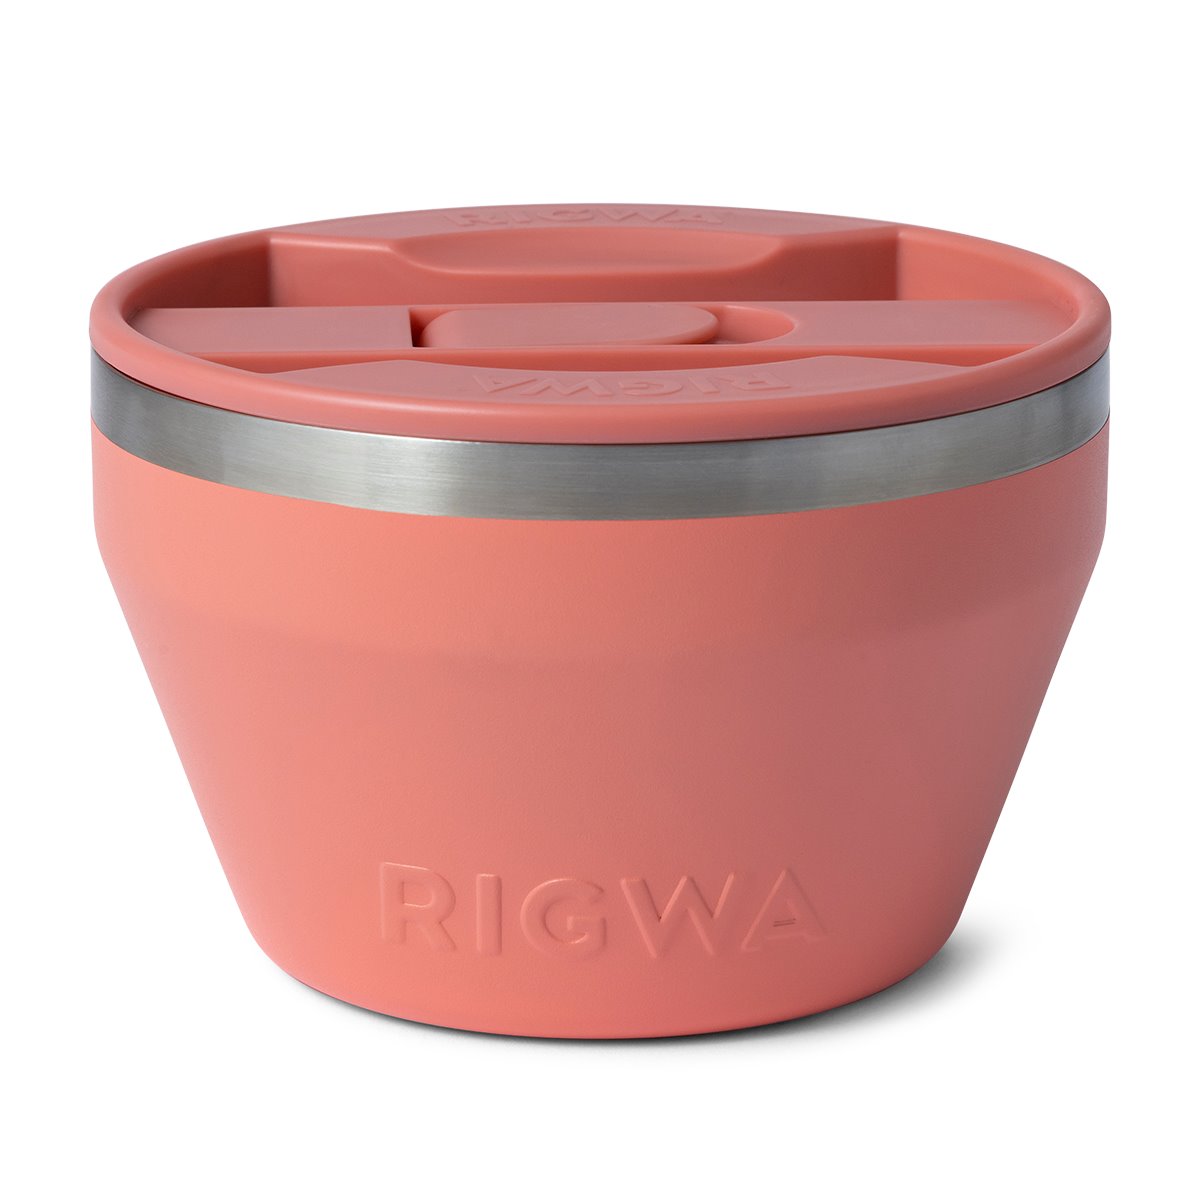 Rigwa Life ADVNTR Bowl (20oz) - Cool Gray